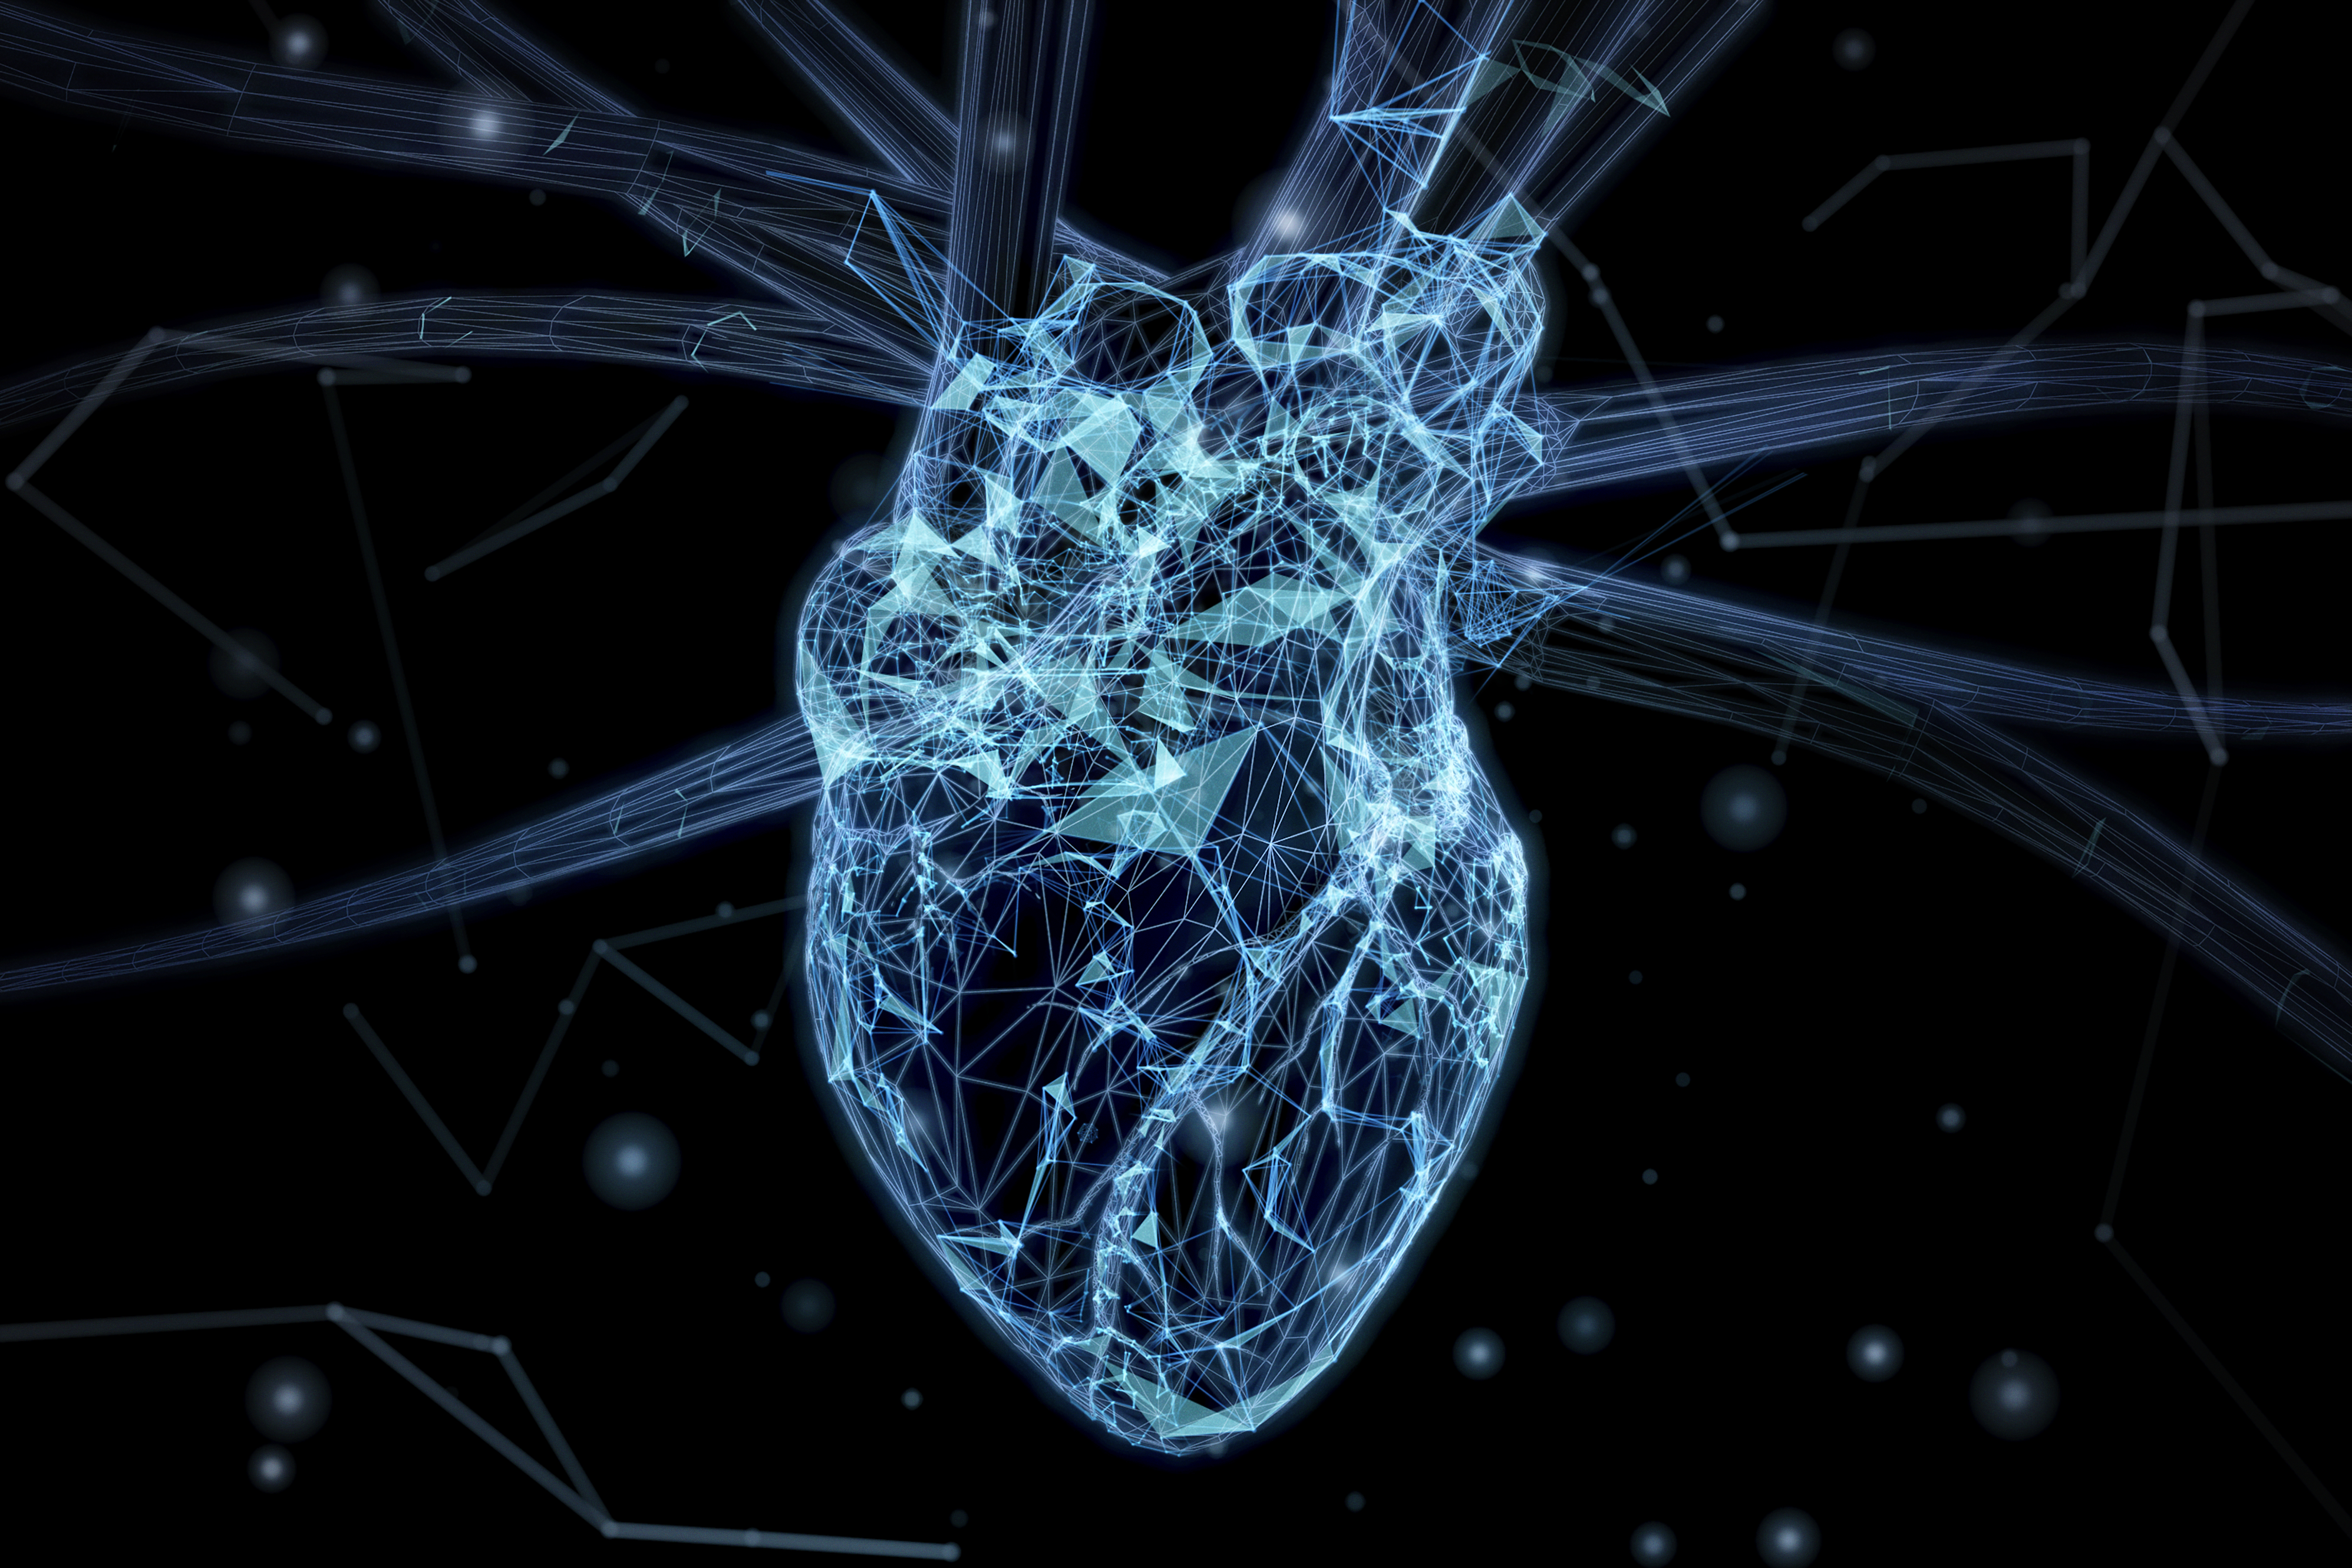 El estudio se hizo con ecocardiogramas, que es una tecnología que usa ondas sonoras para producir imágenes del corazón